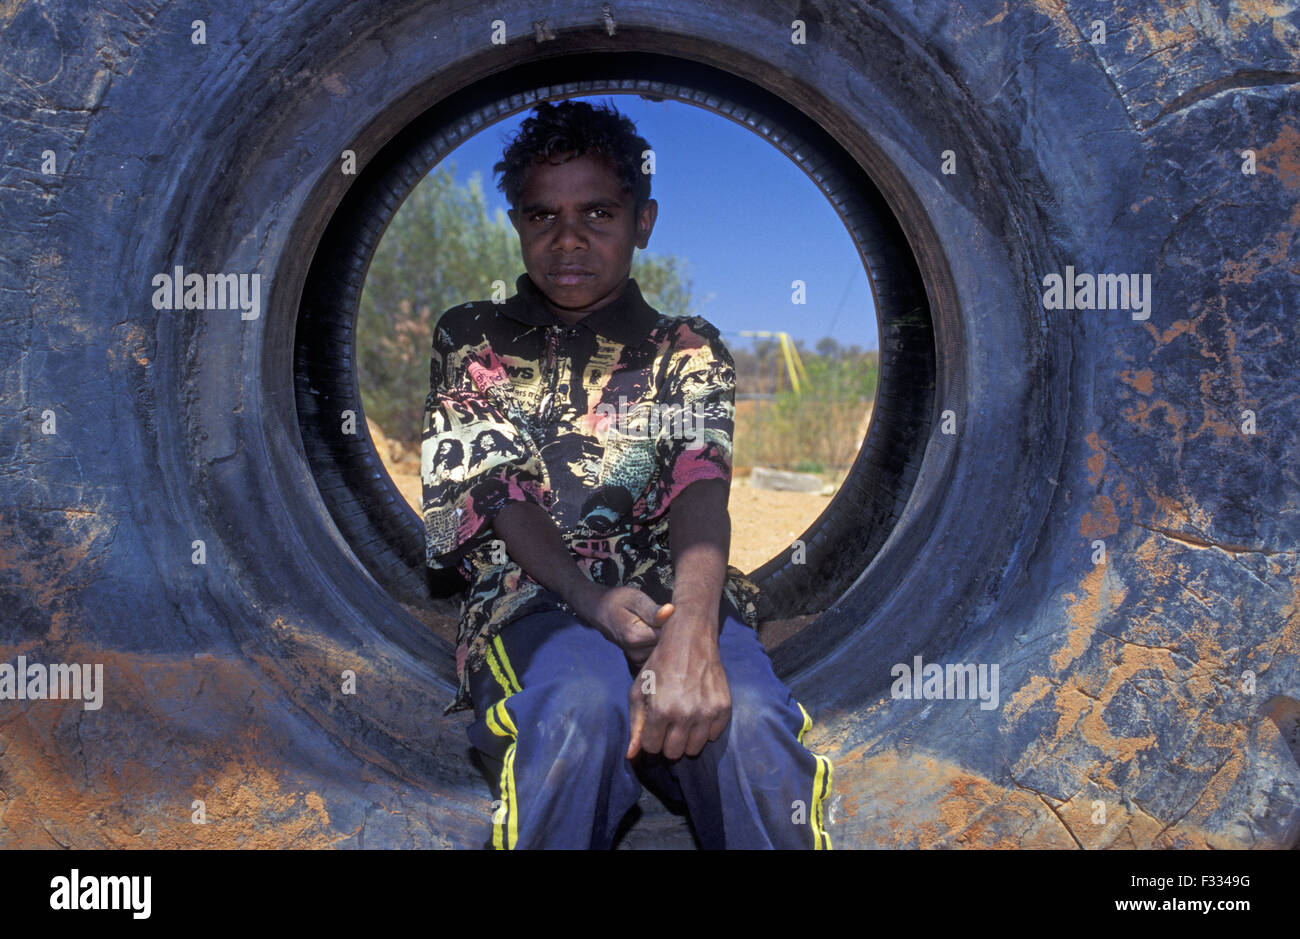 Jeune garçon autochtone, Yuelamu (Mount Allan) dans le Territoire du Nord, Australie Banque D'Images